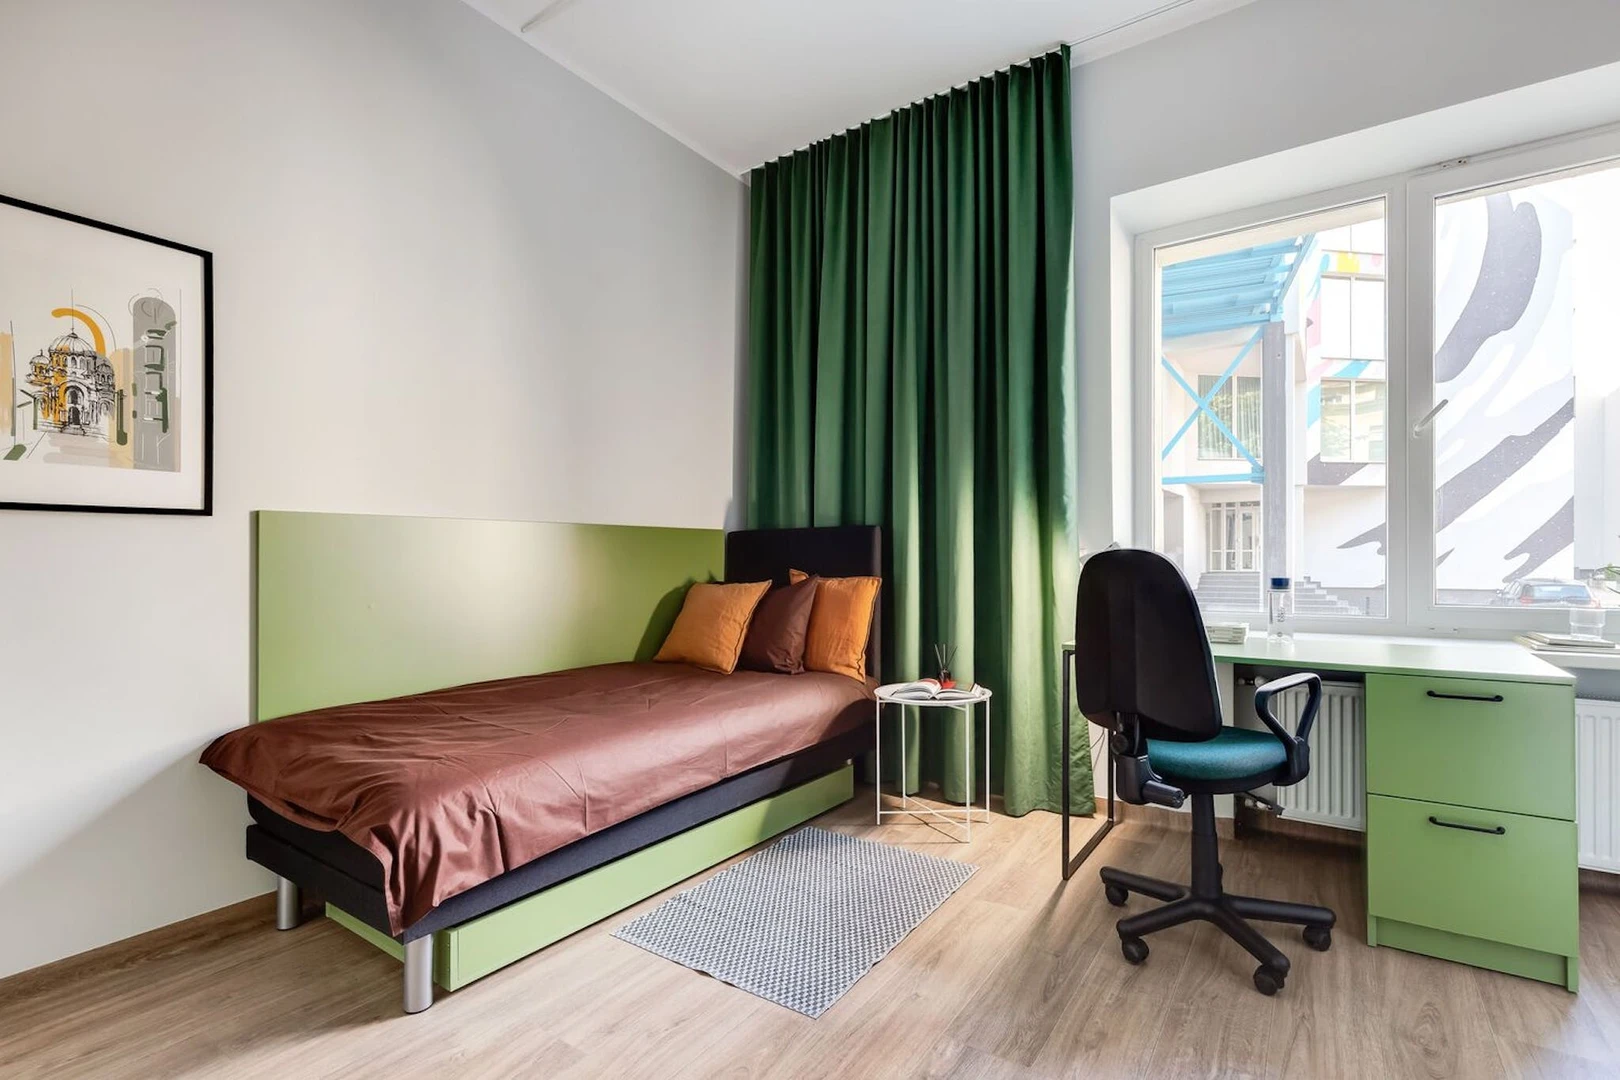 Alquiler de habitación en piso compartido en Kaunas